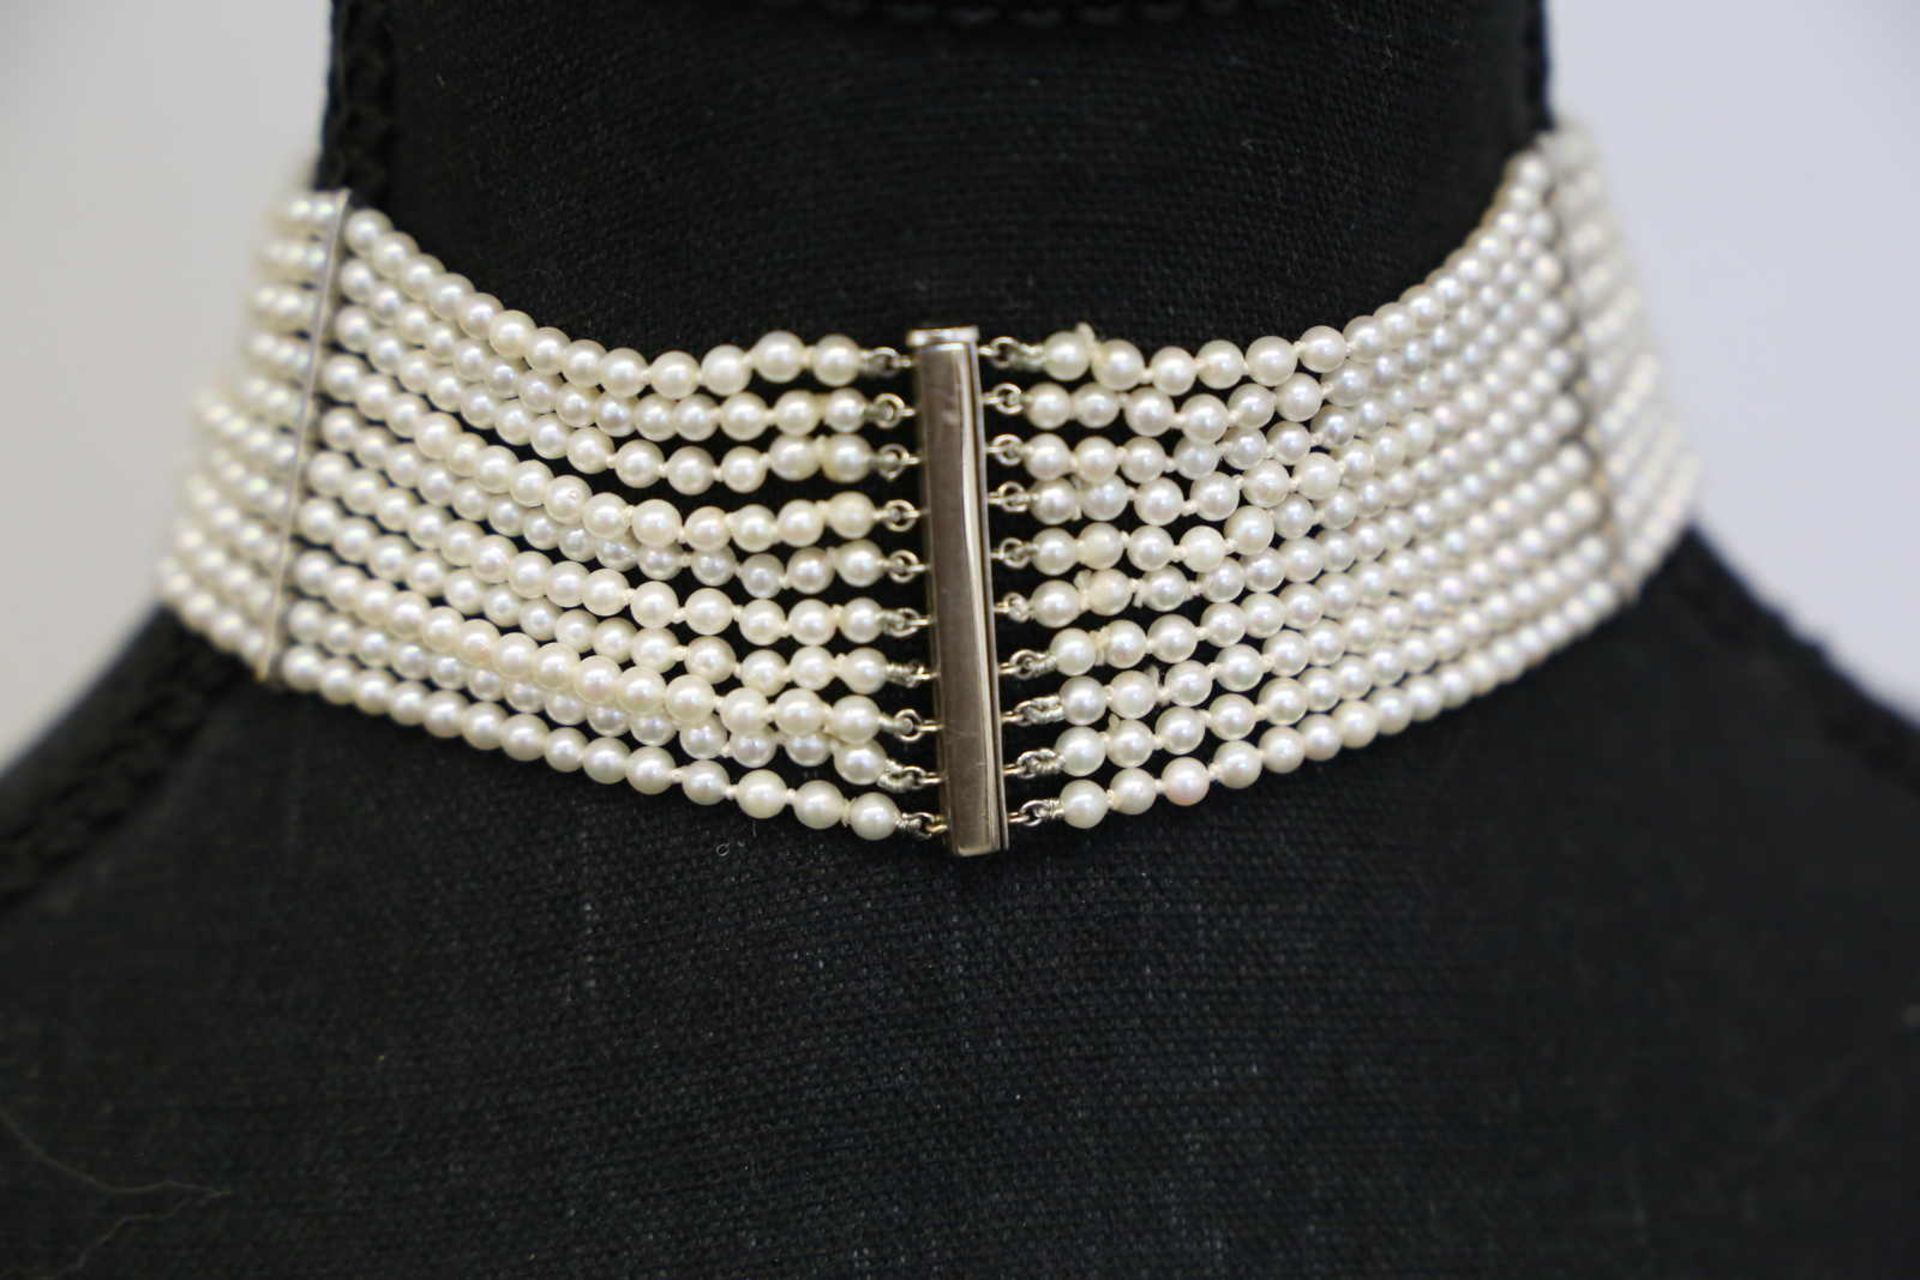 COLLIER DE CHIEN Prachtvolles Perlen-Collier mit edlem Mittelstück und Verschluss in Weissgold - Image 4 of 4